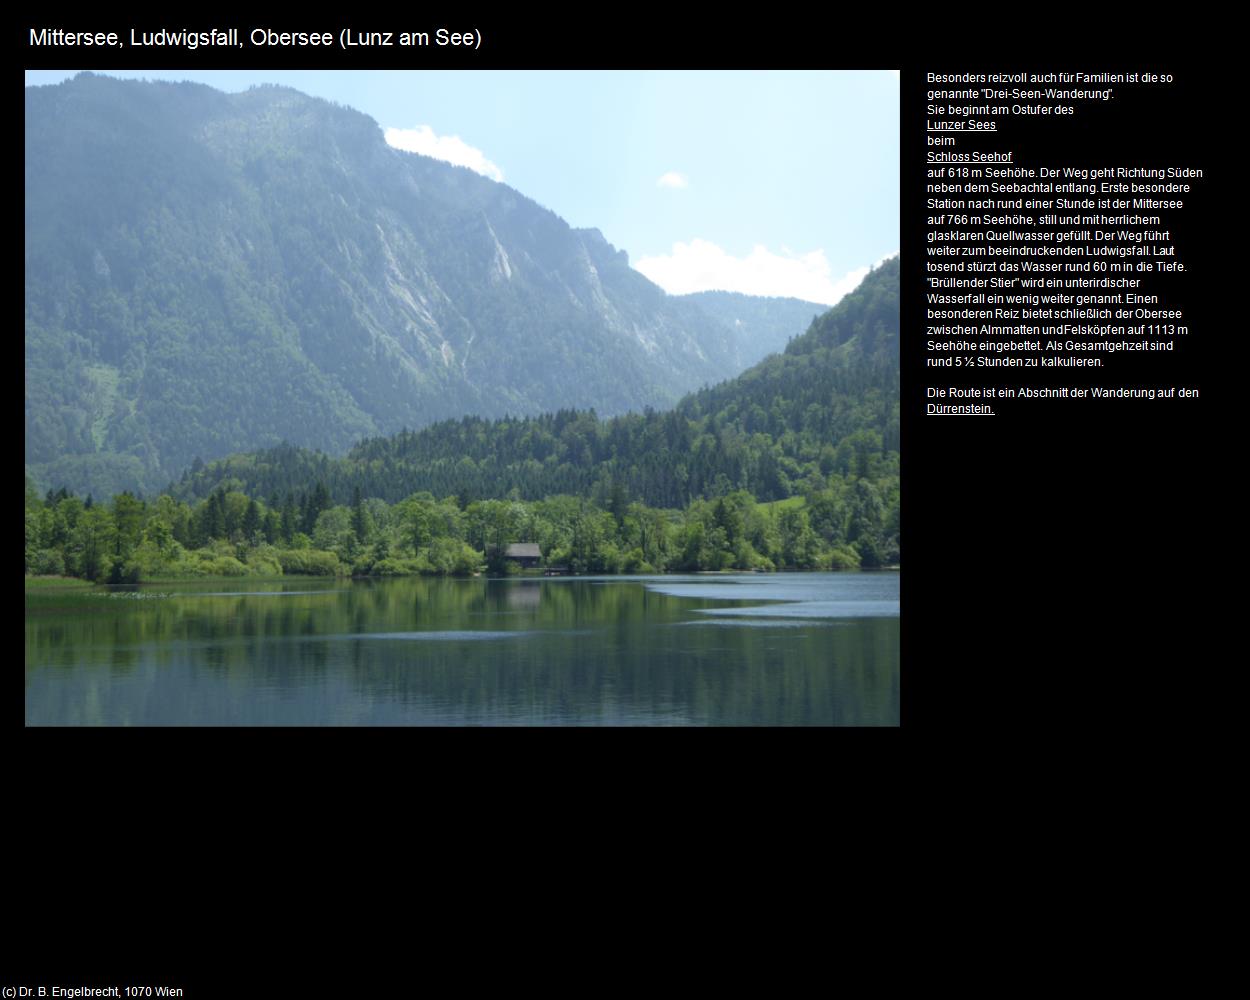 Mittersee und Ludwigsfall bei Obersee (Lunz am See) in Kulturatlas-NIEDERÖSTERREICH(c)B.Engelbrecht